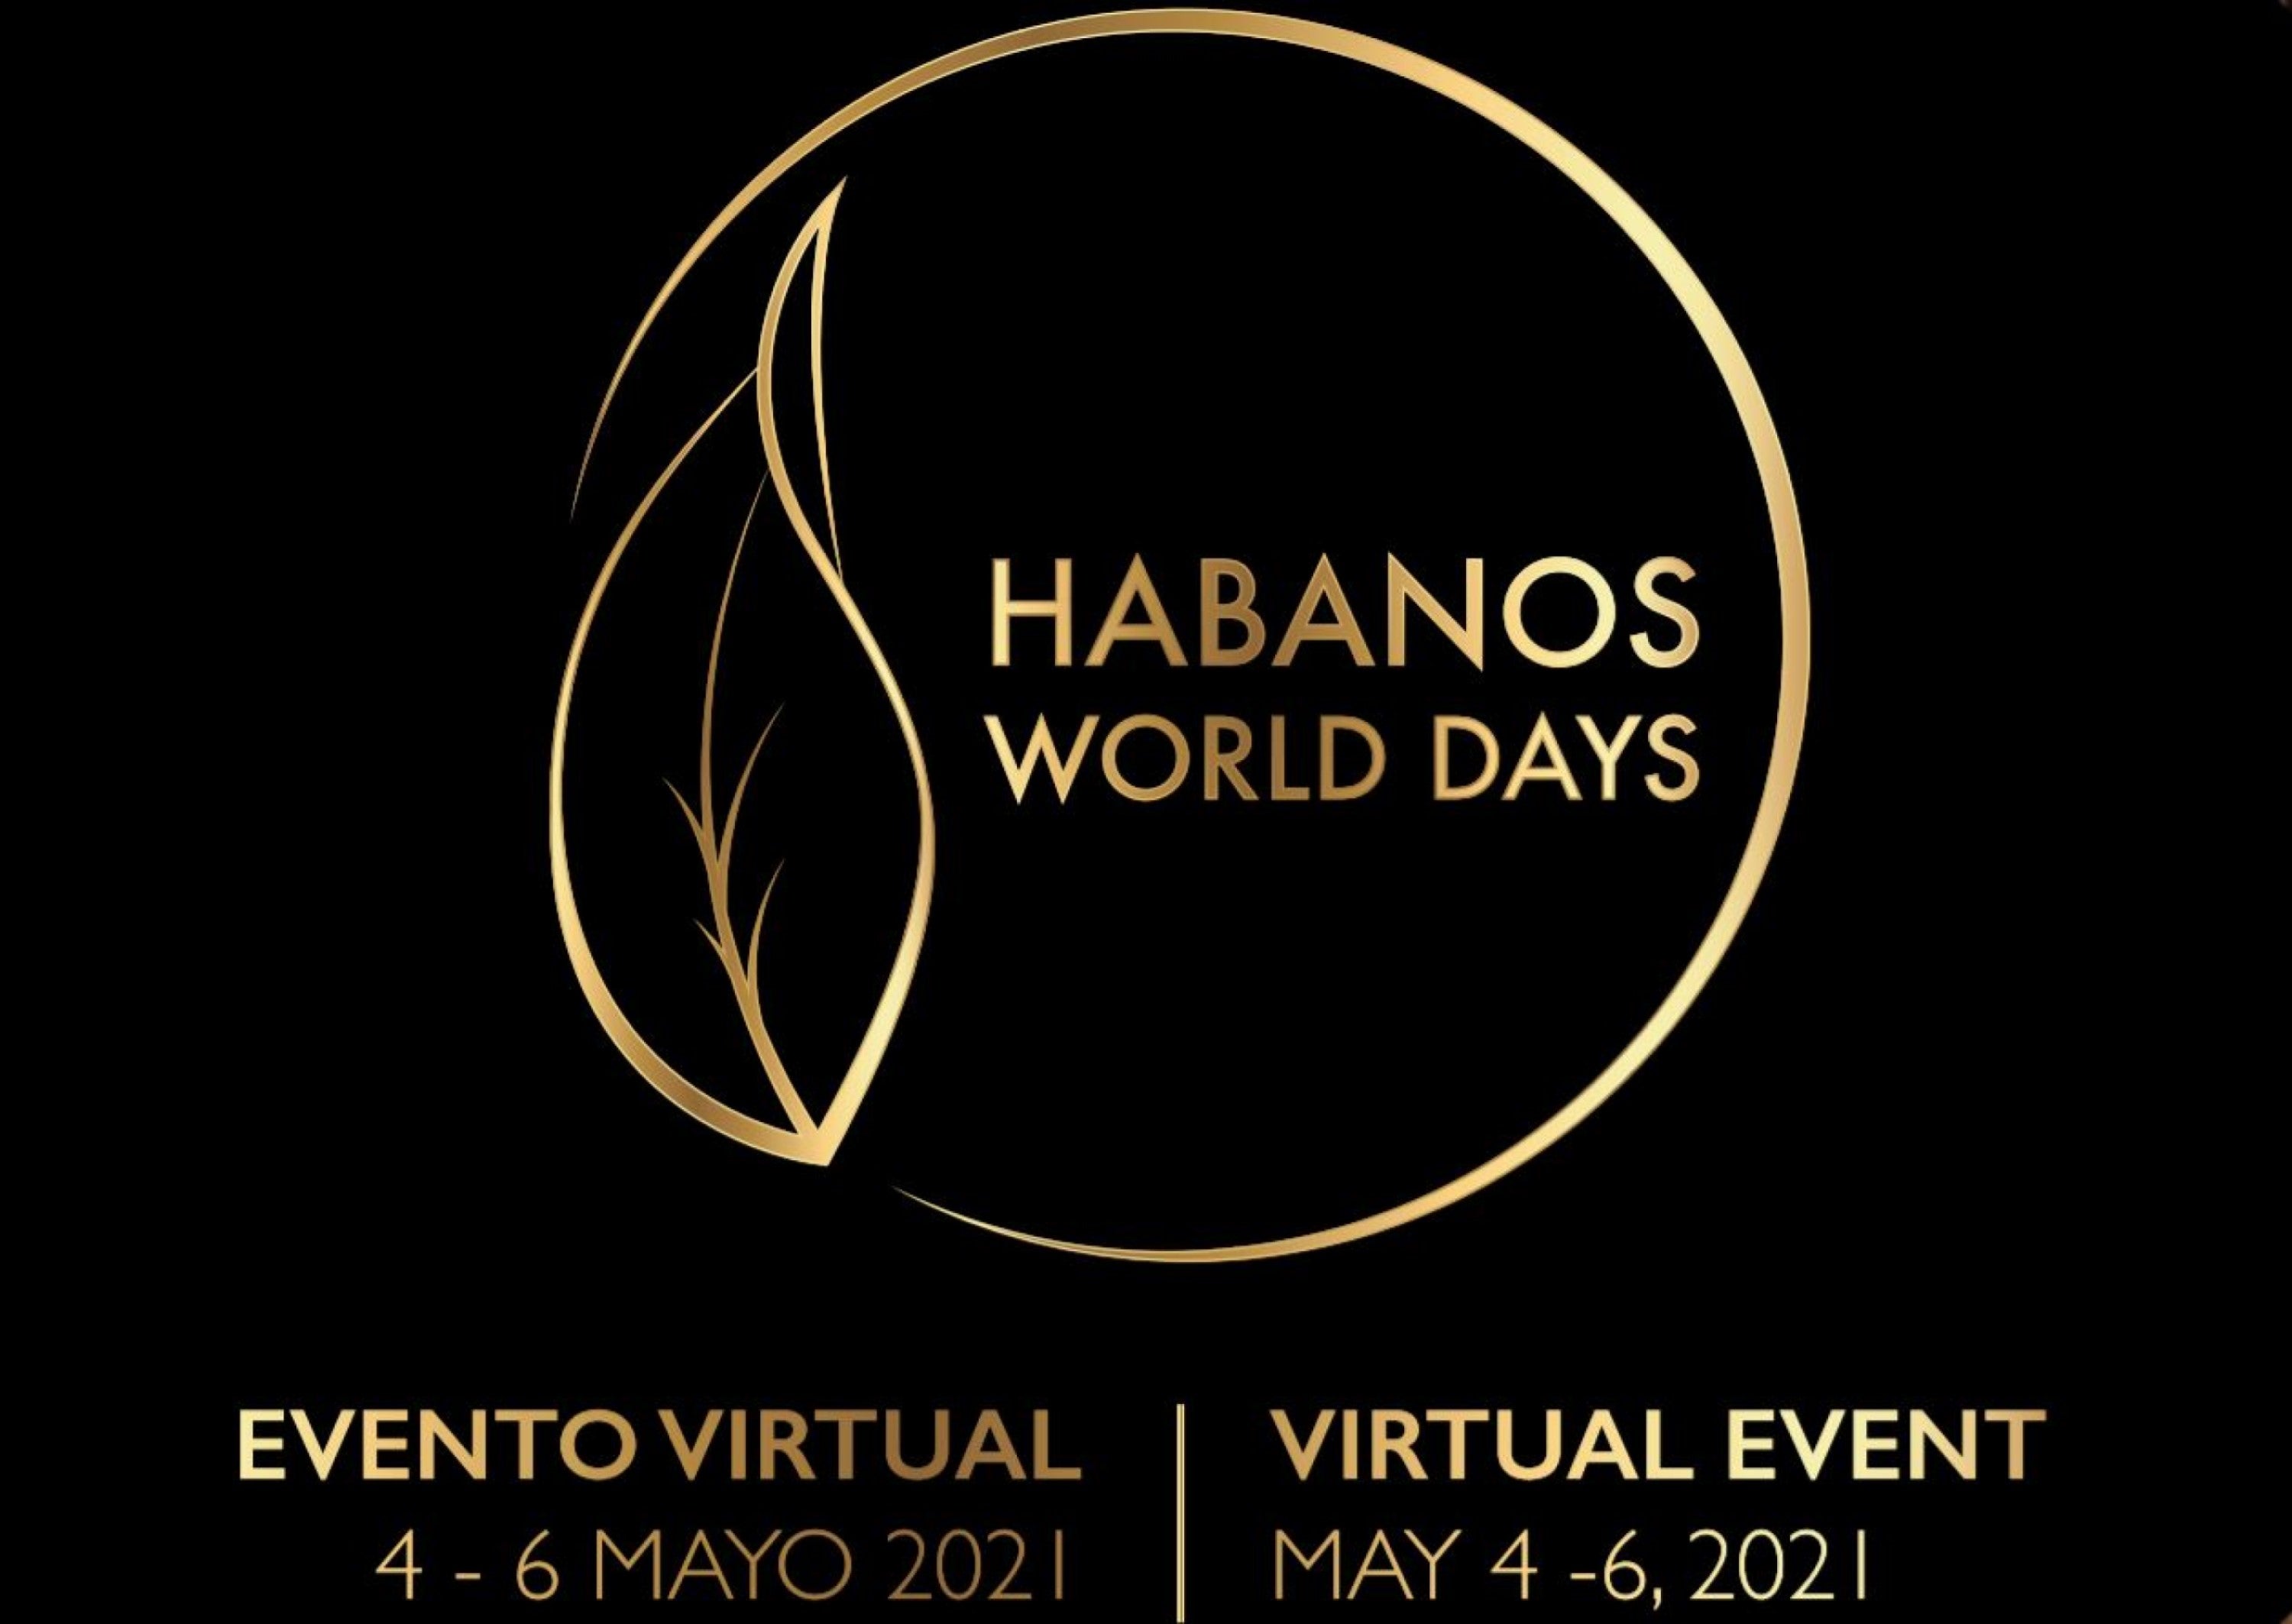 The Habanos World Days 2021 Logo